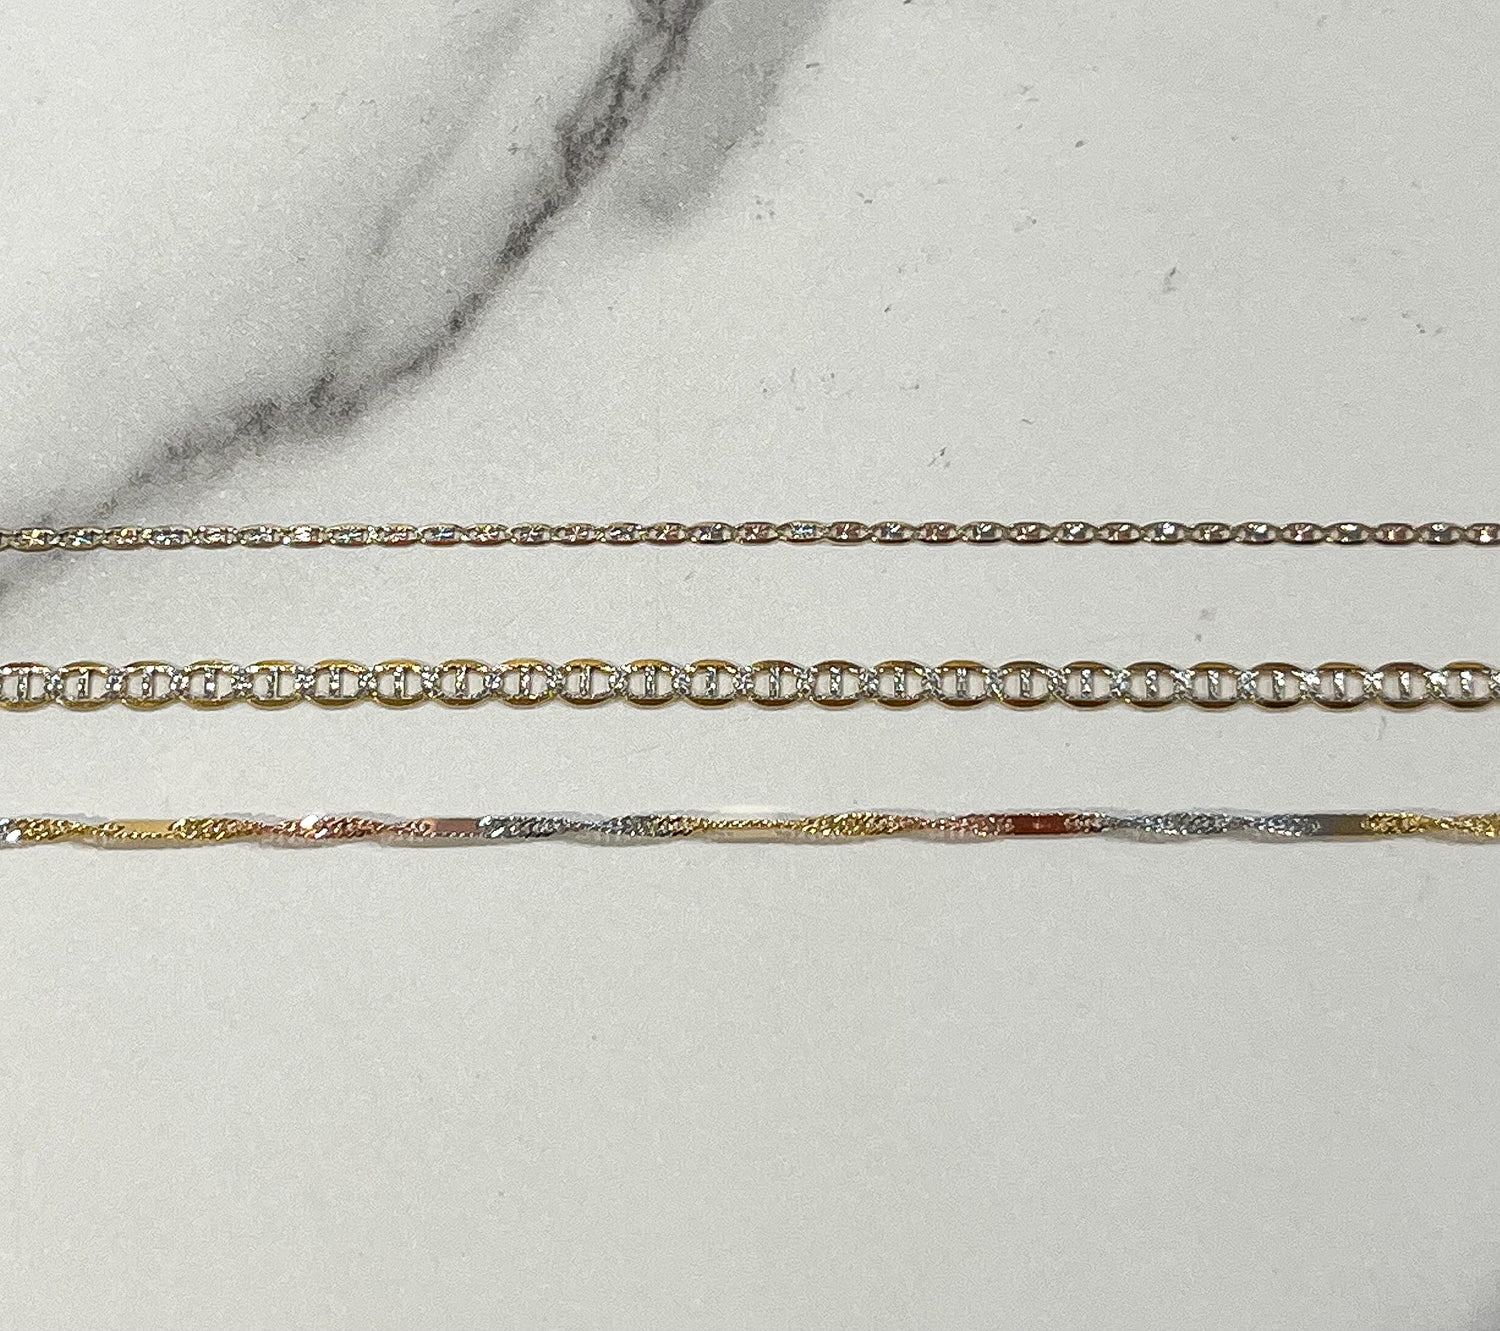 unique chain necklaces